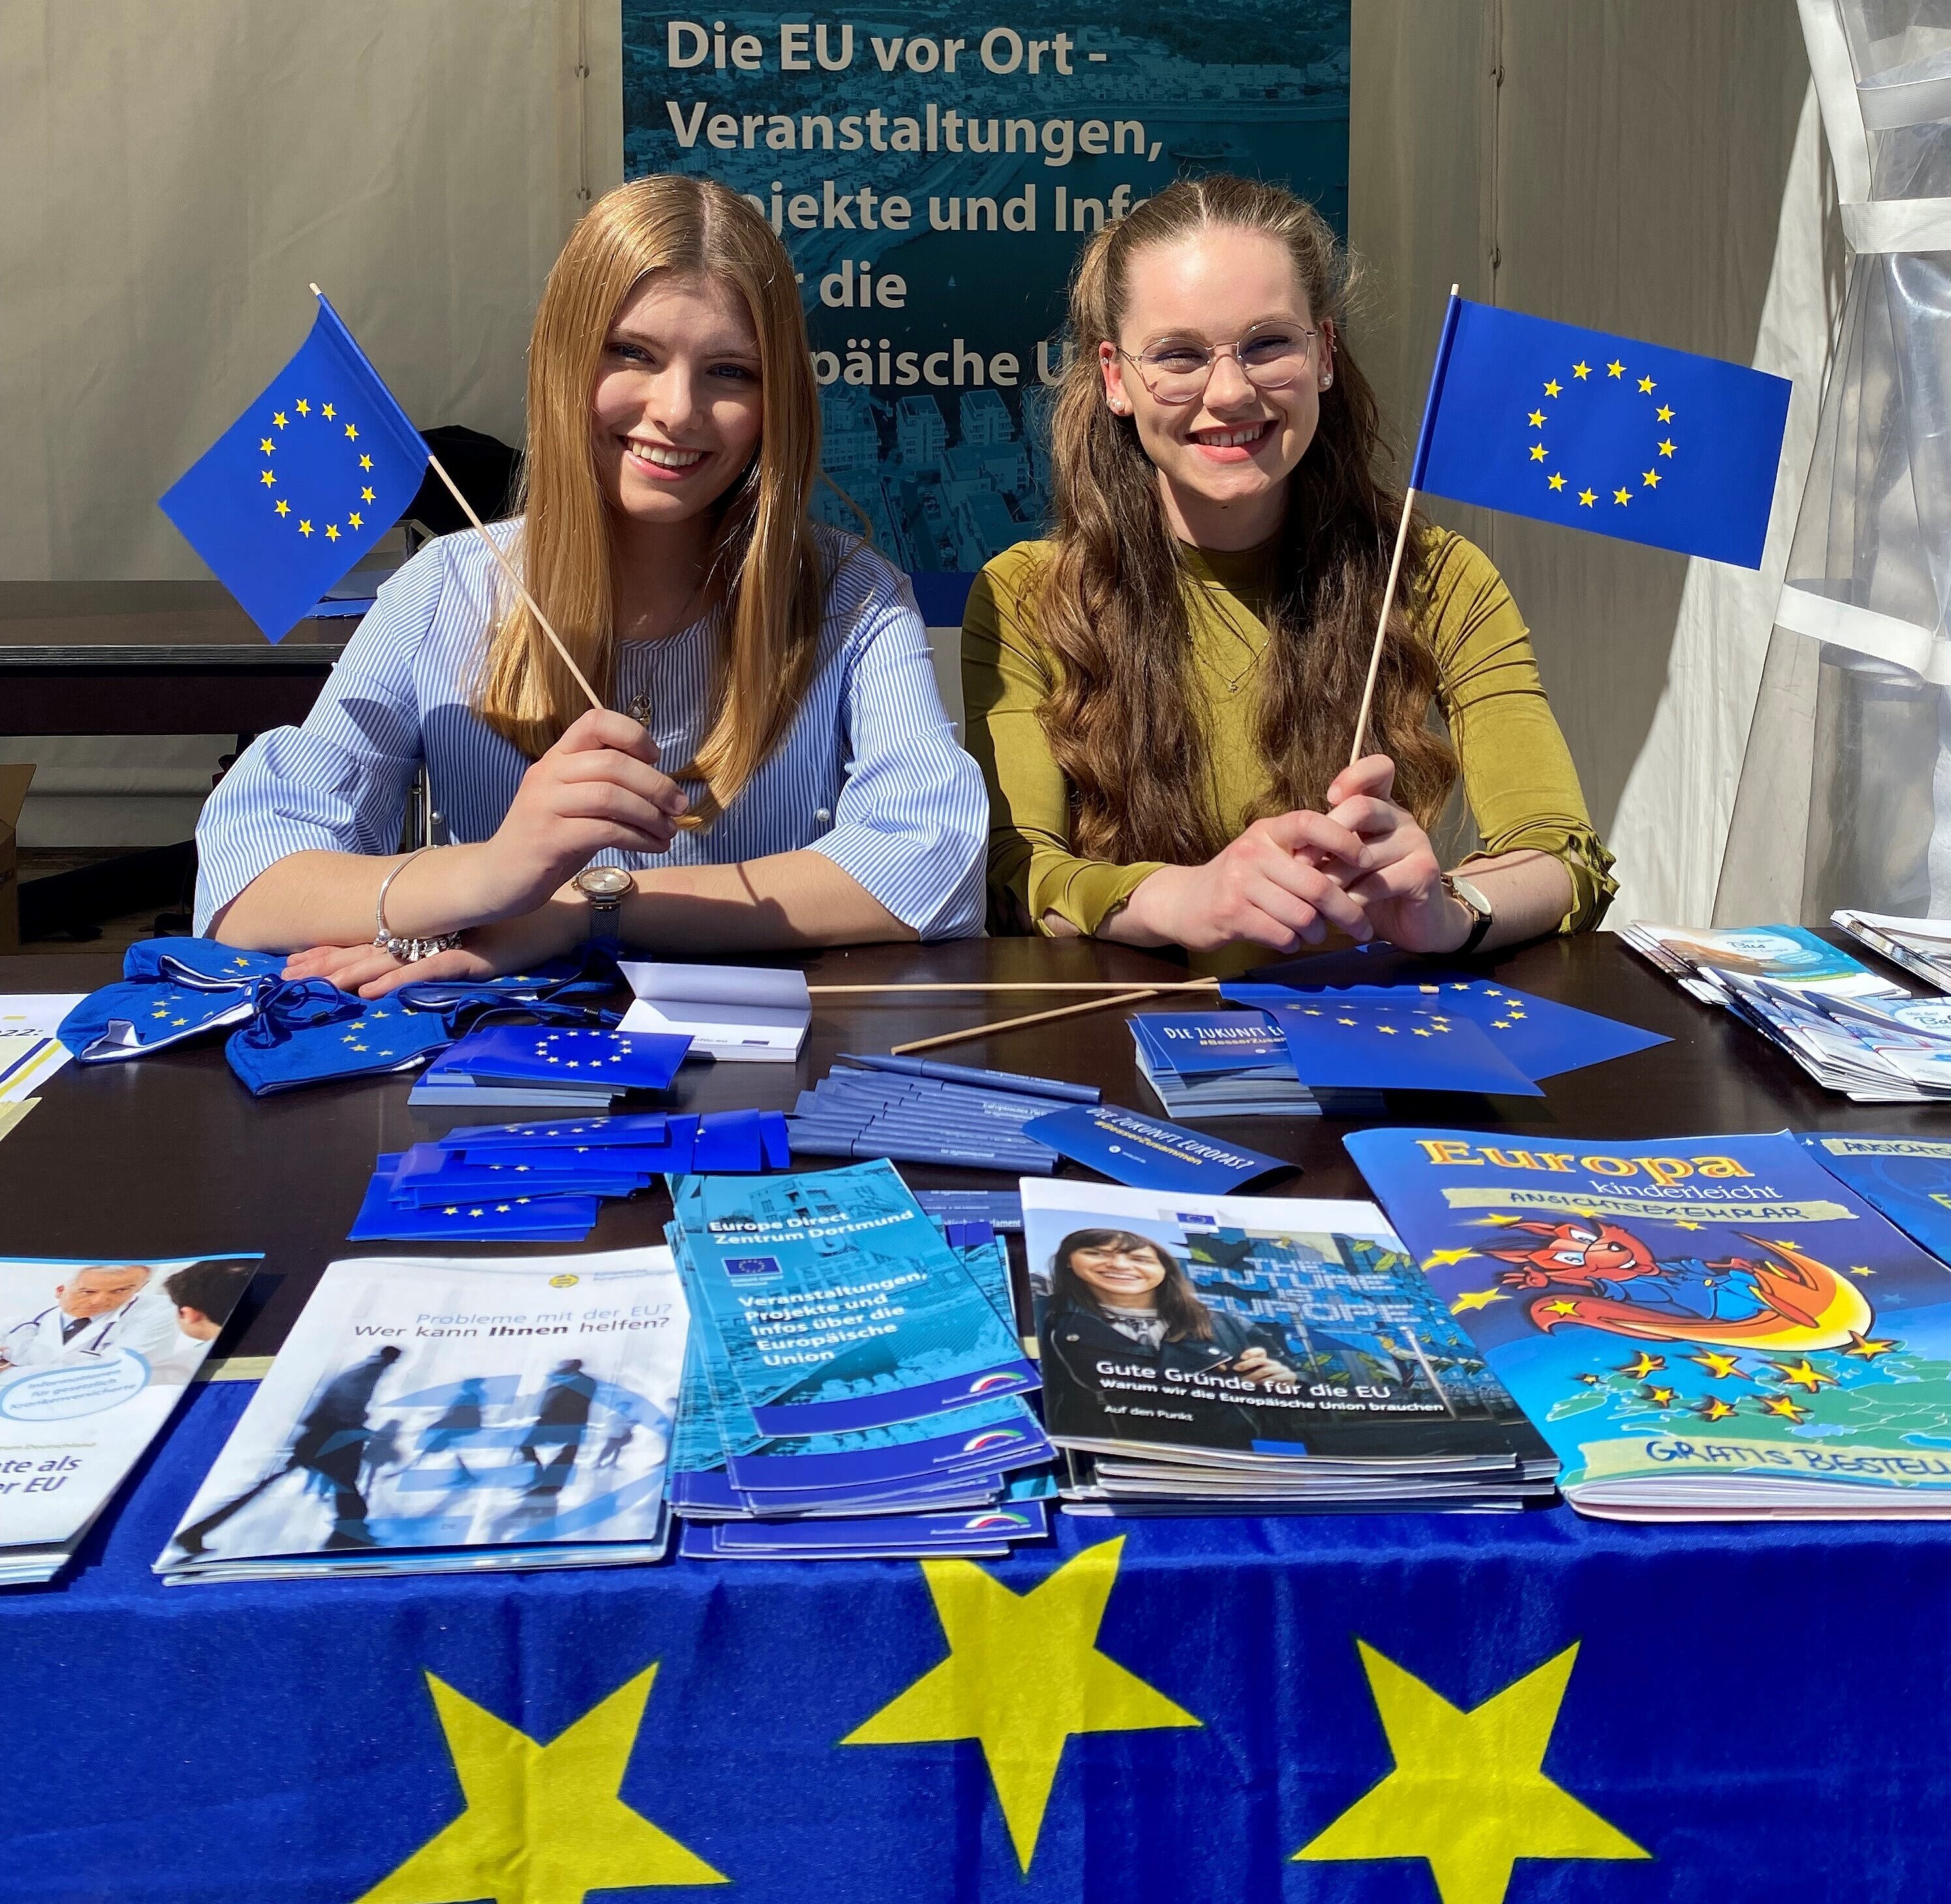 Zwei Mädchen am Infostand für die Europawochen